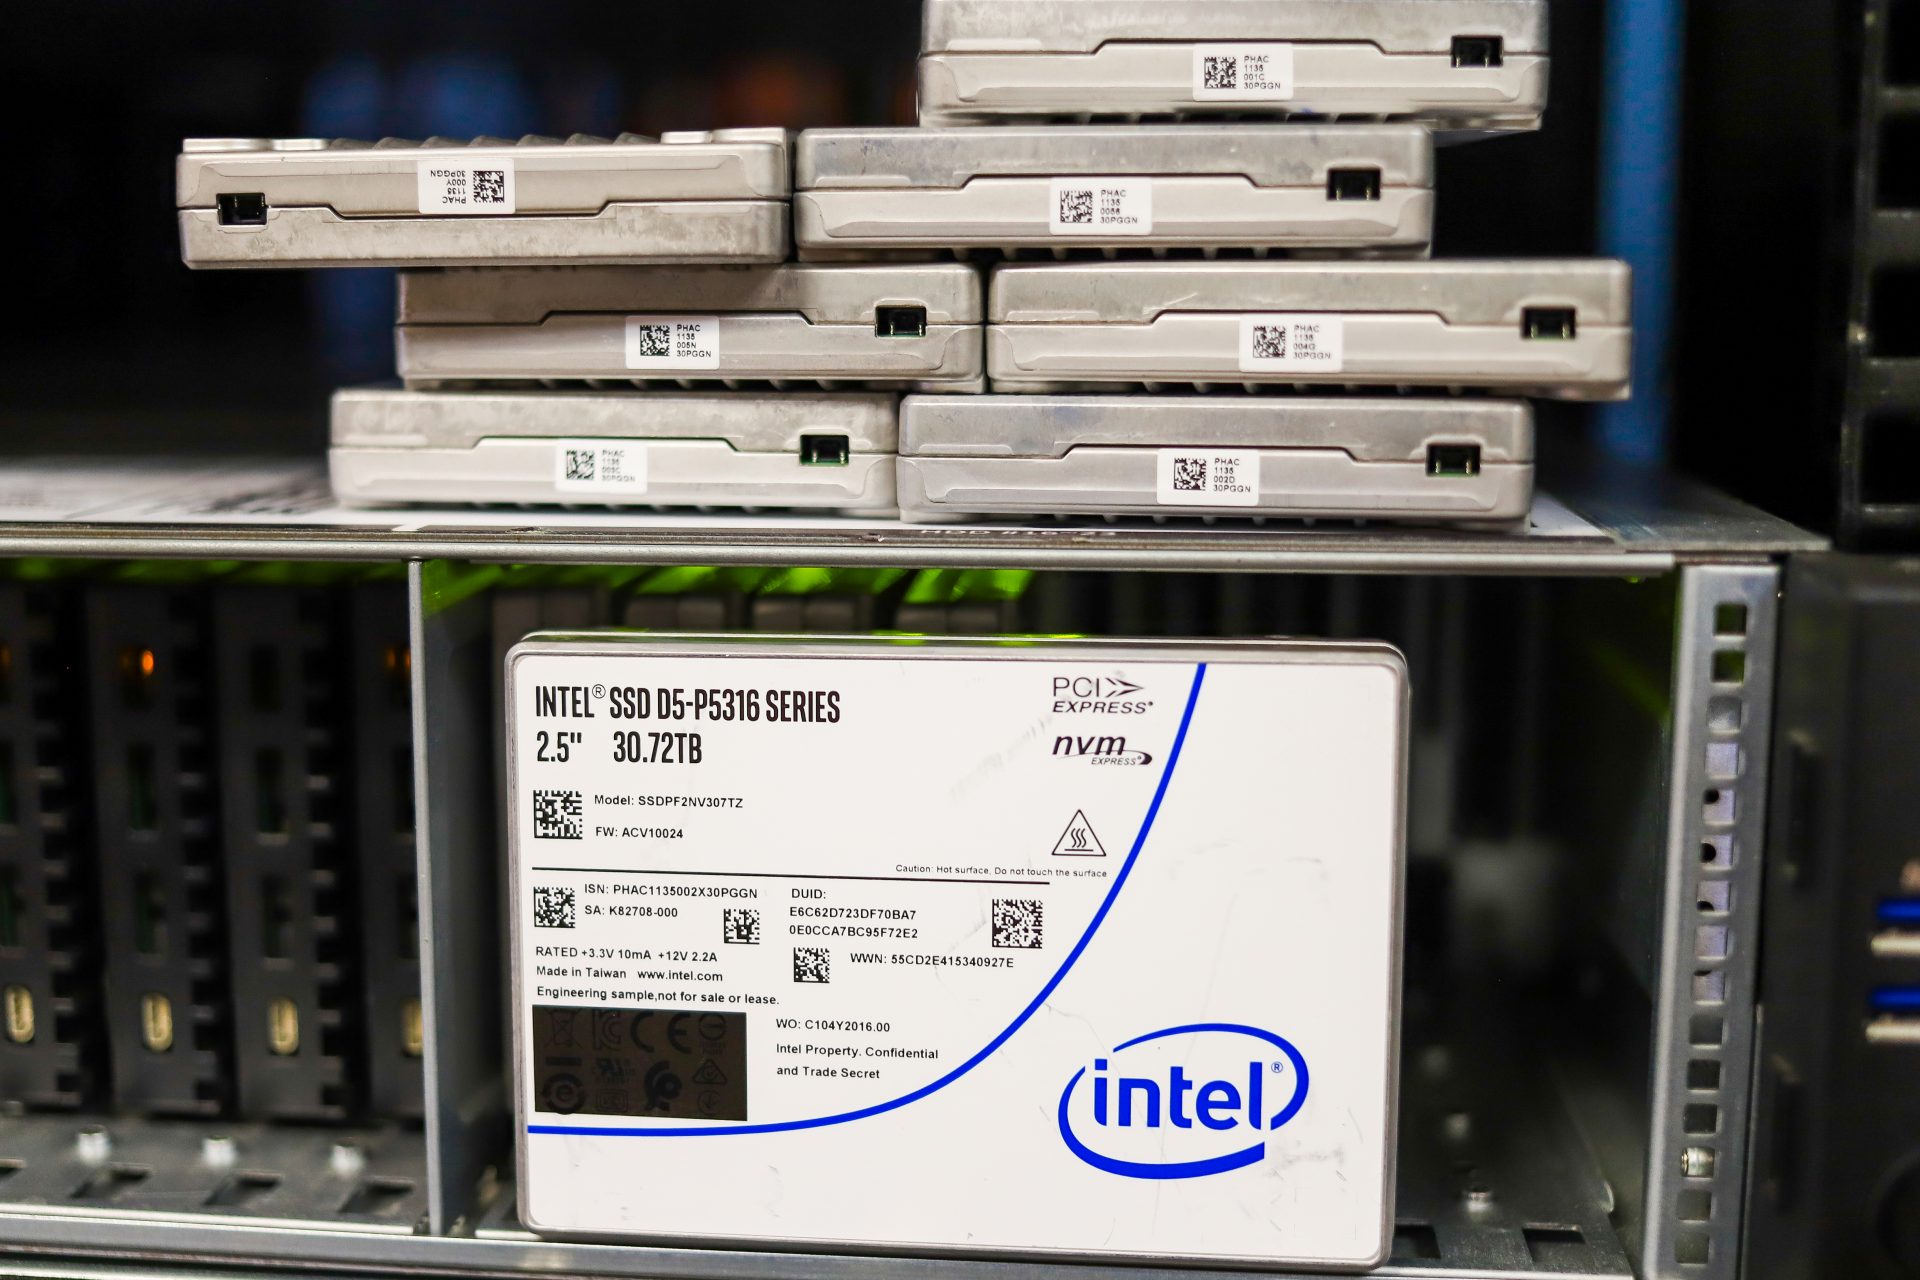 Intel P5316 SSD Review (30.72TB) -